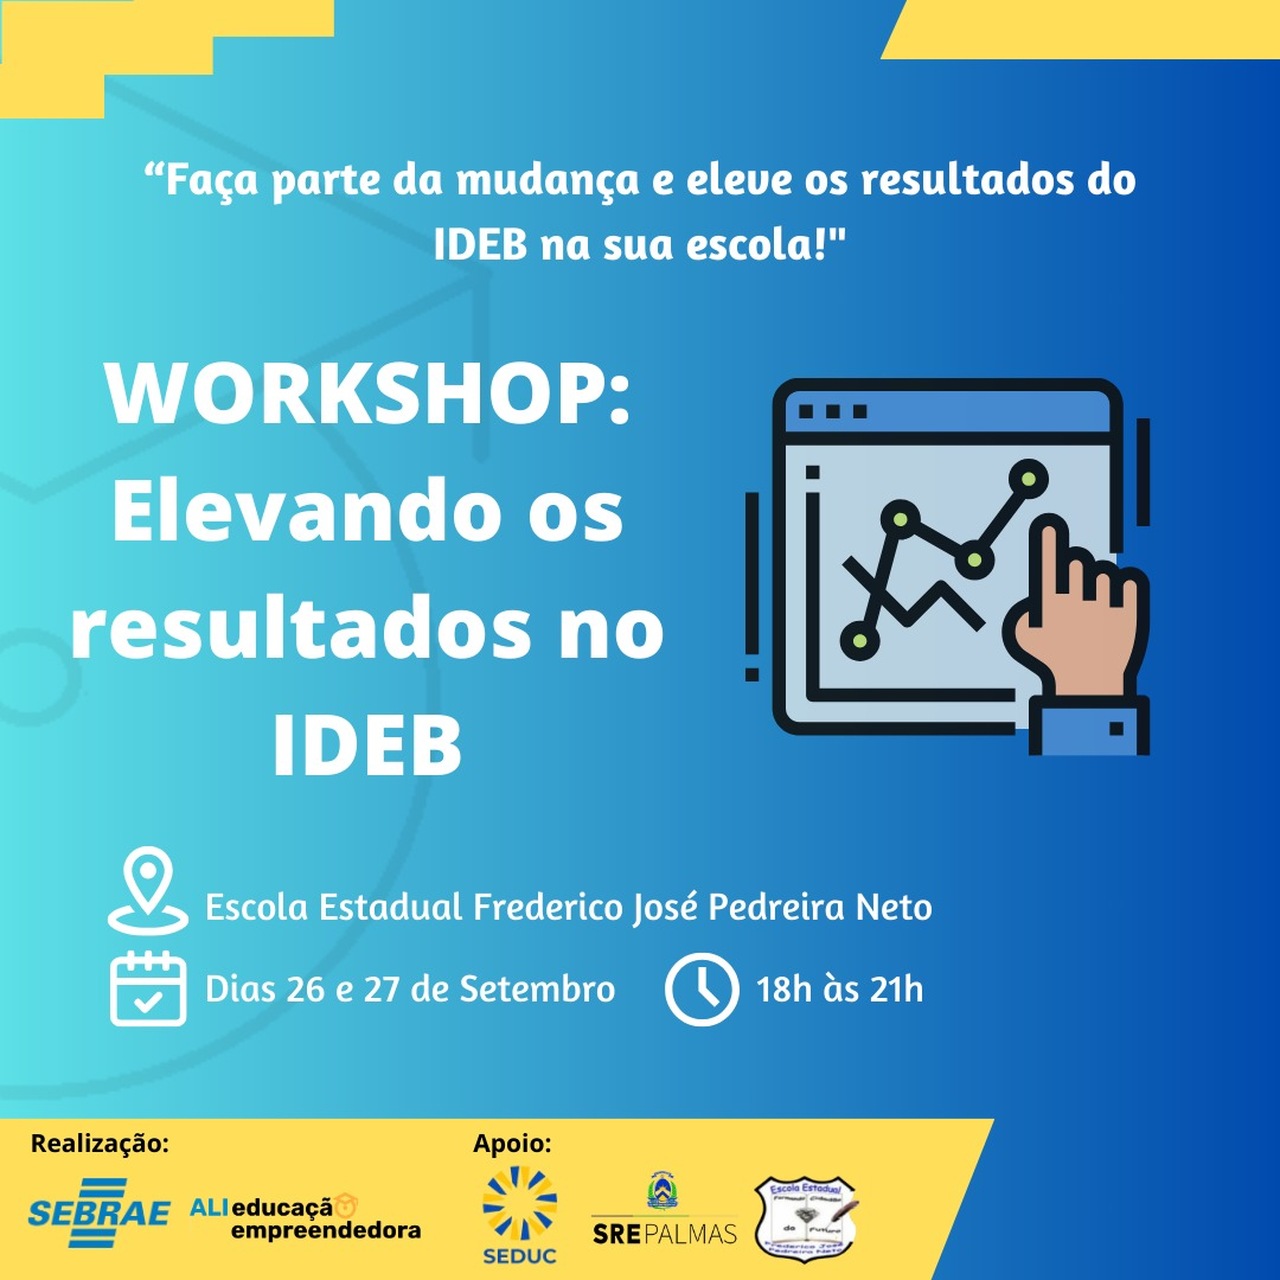 Workshop para a comunidade educacional avaliar e propor melhorias para os indicadores do IDEB é promovido pelo Sebrae TO; confira